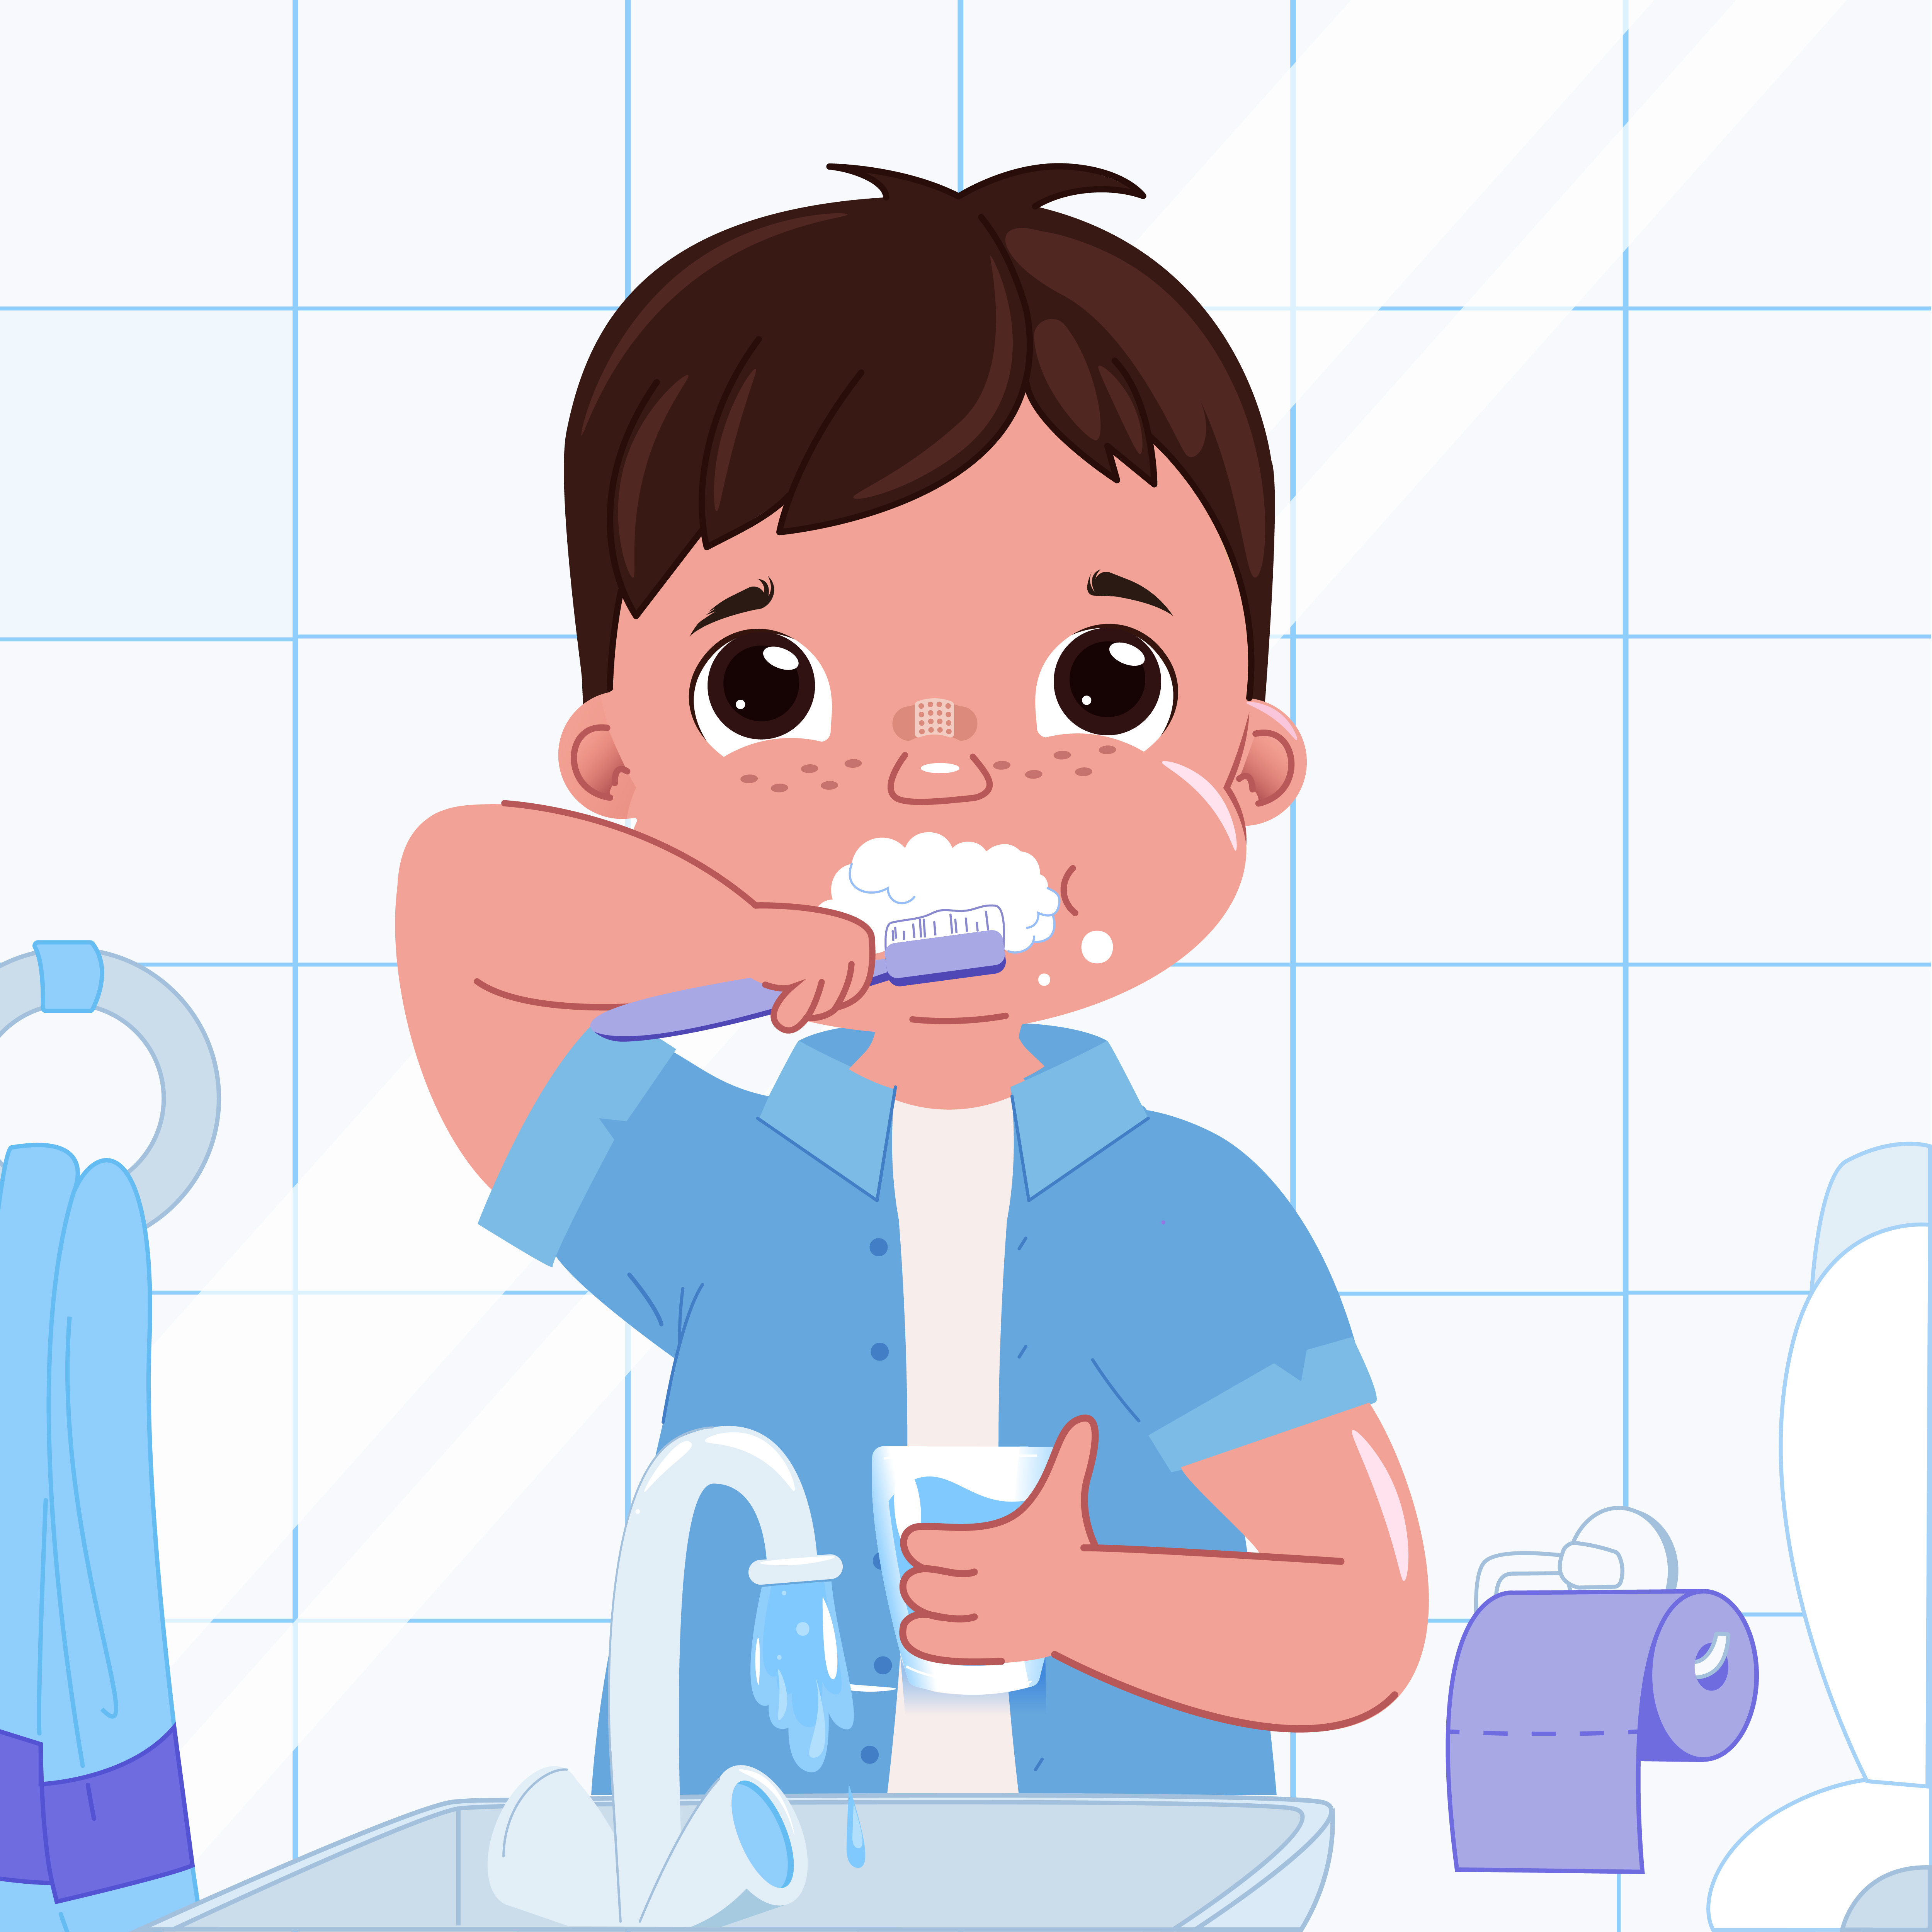 Răng và những điều cần lưu ý ở hệ răng sữa